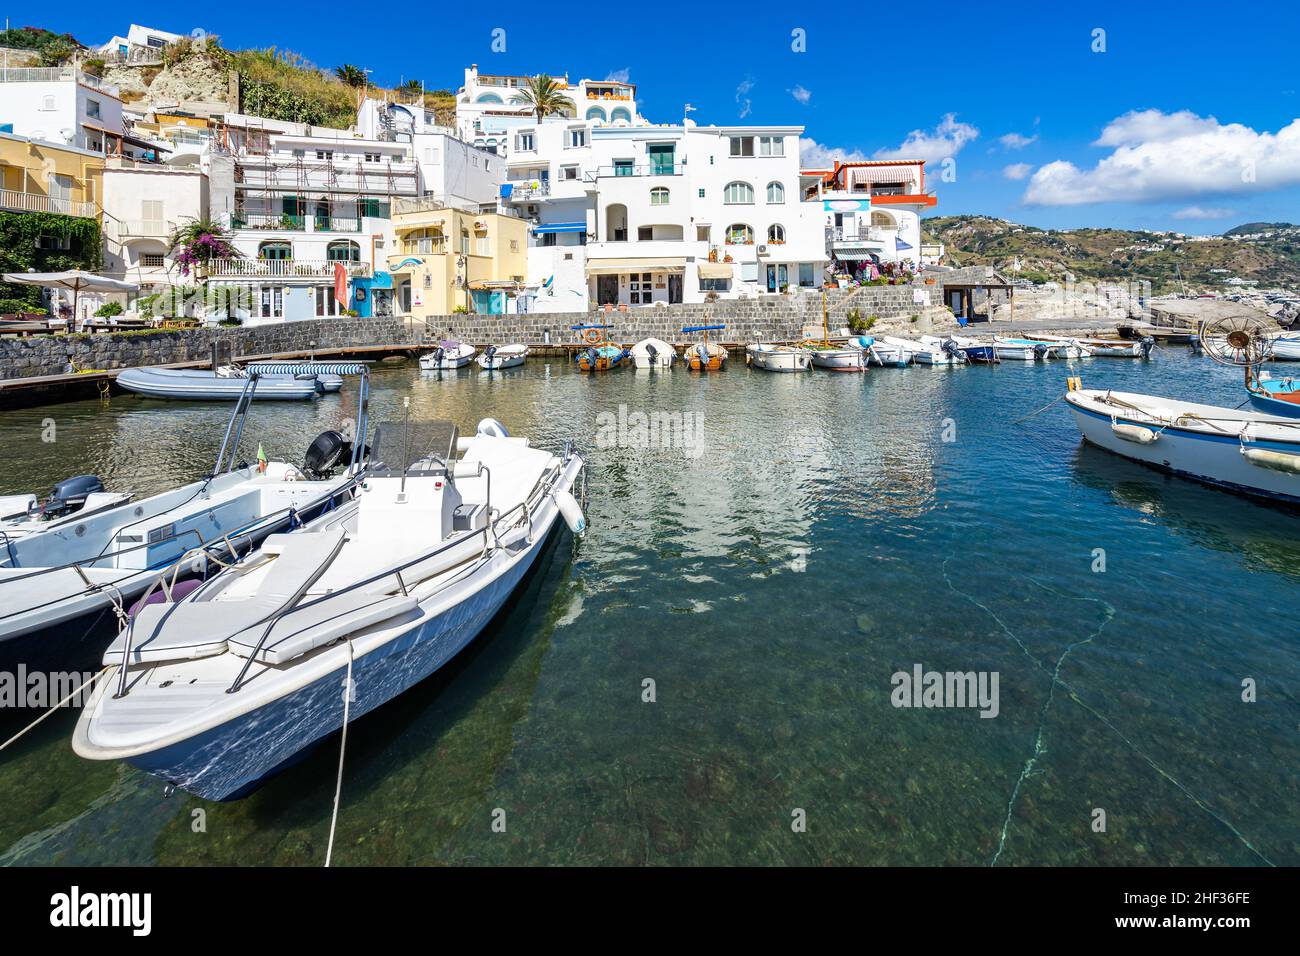 Des bateaux de pêche amarrés au port coloré de Sant’Angelo d’Ischia.Sant’Angelo, Italie, 2021 septembre Banque D'Images